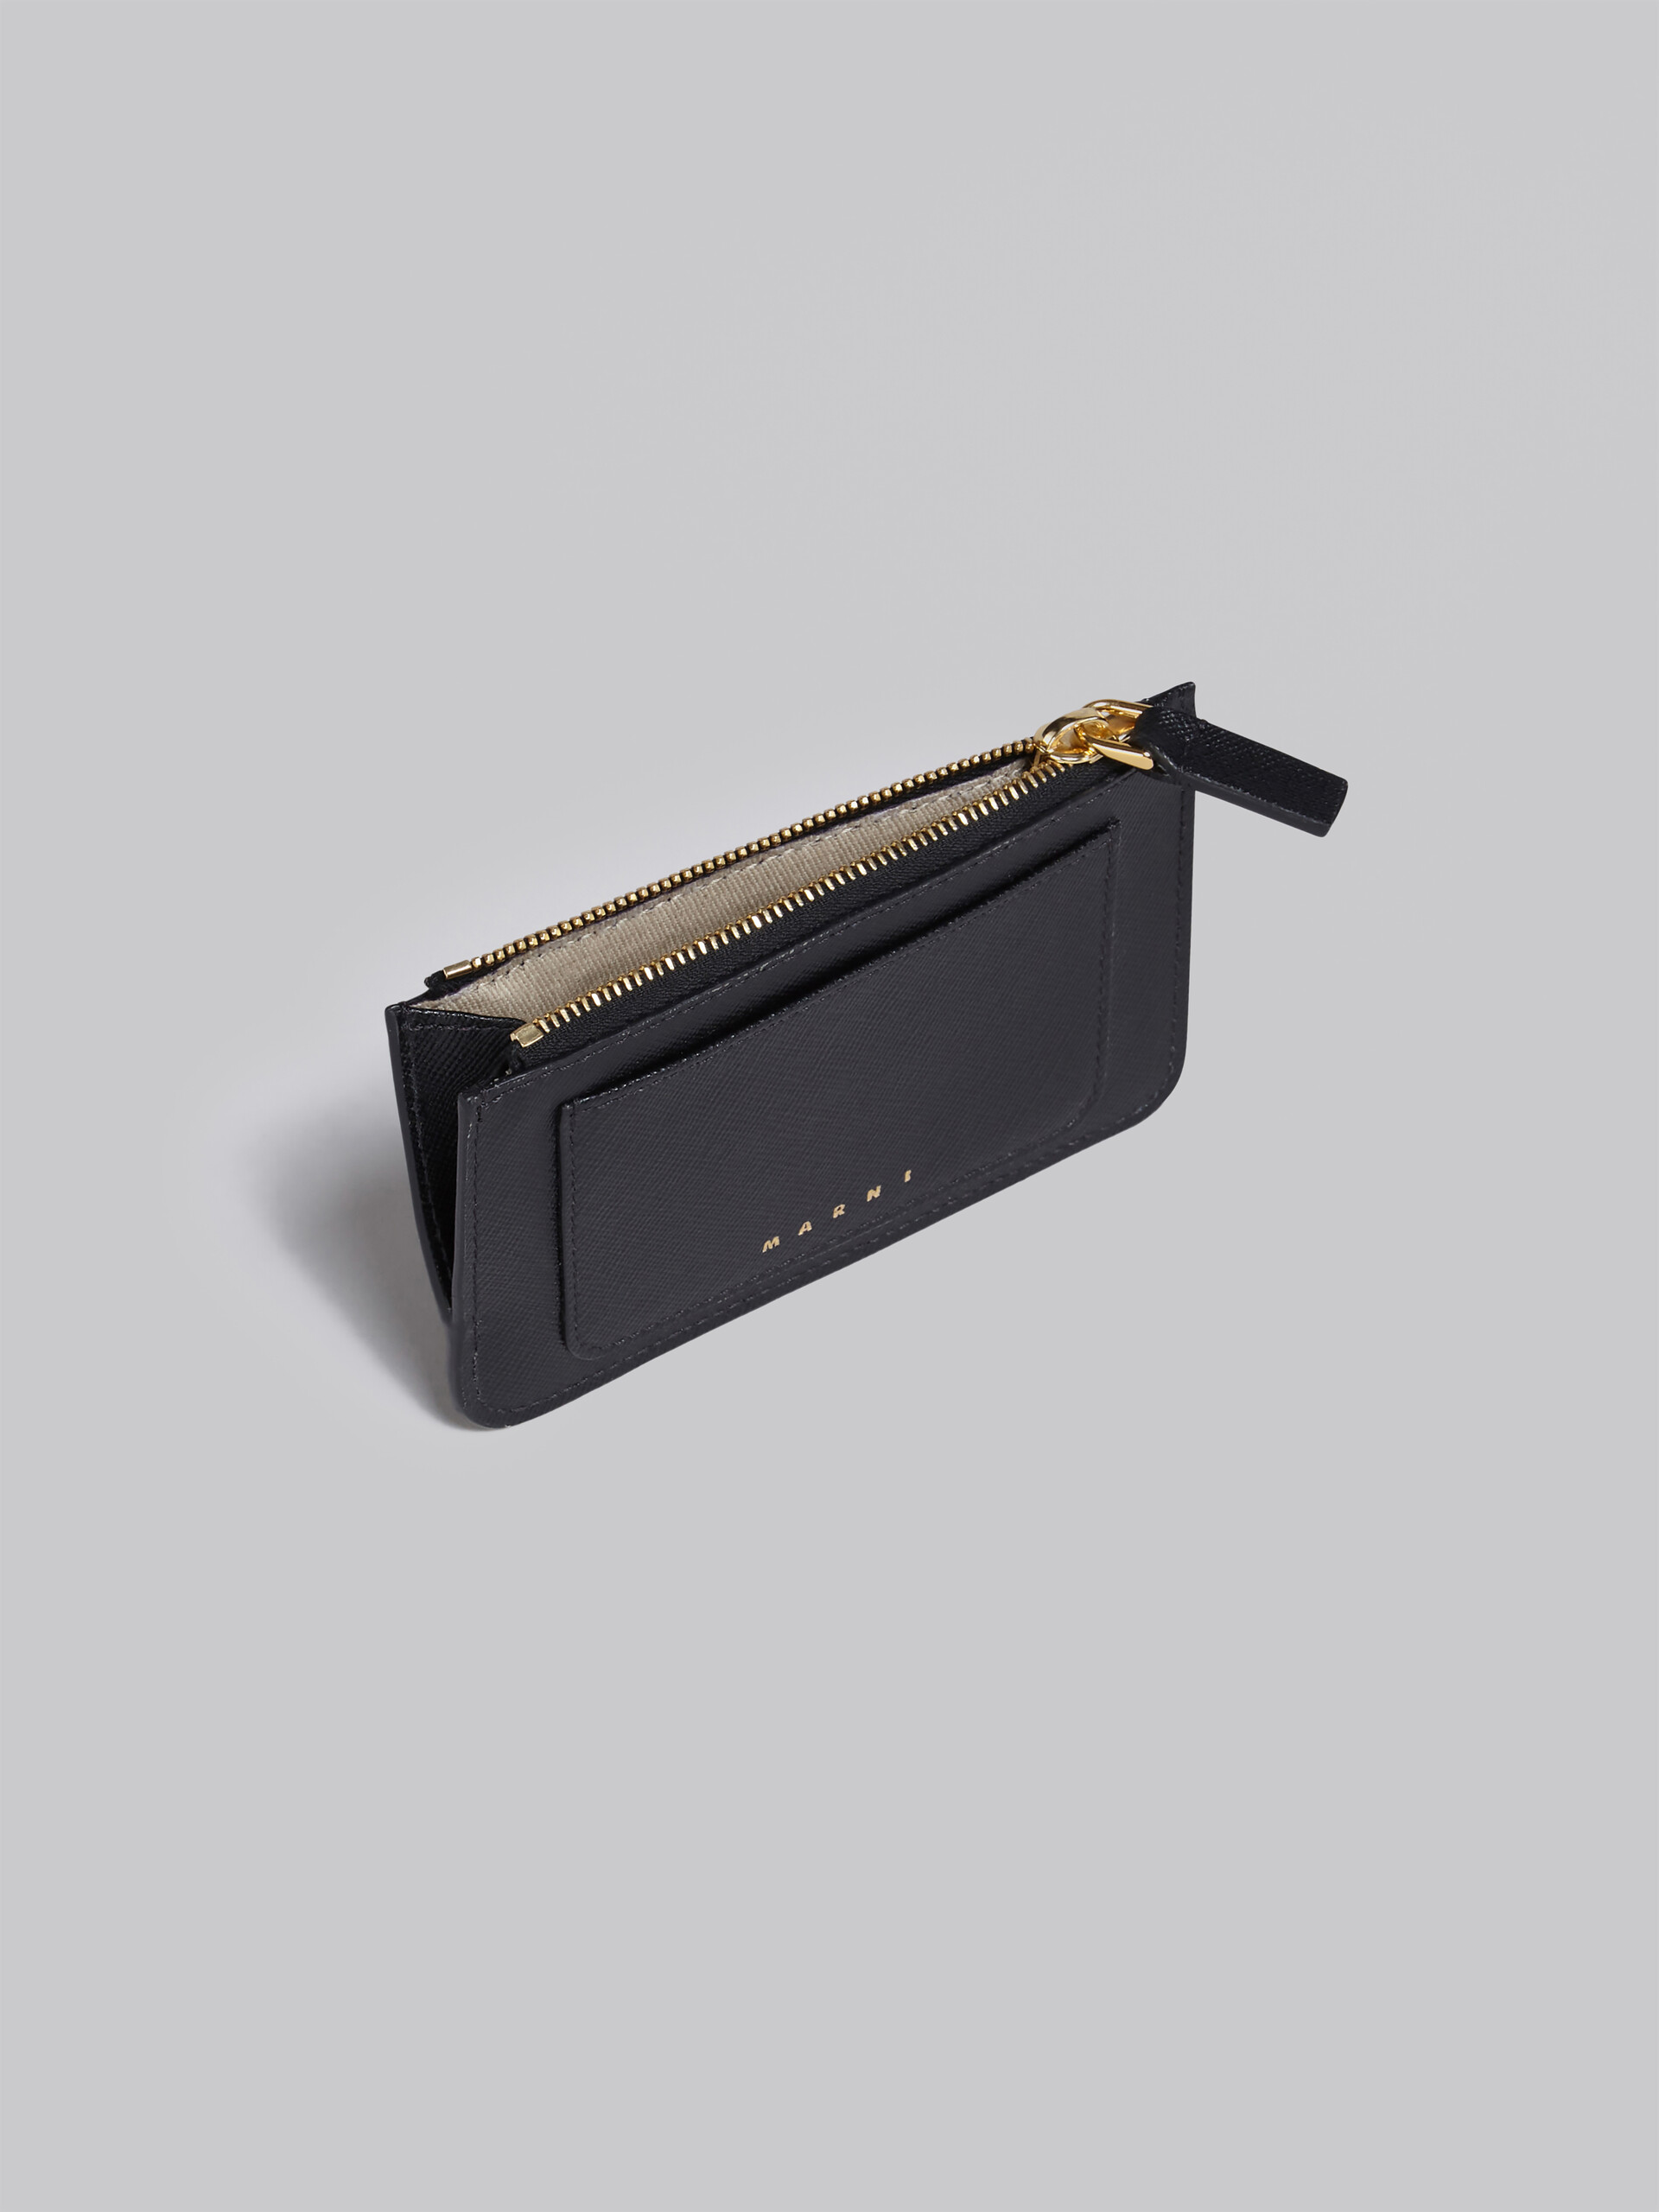 Black saffiano leather card case | Marni